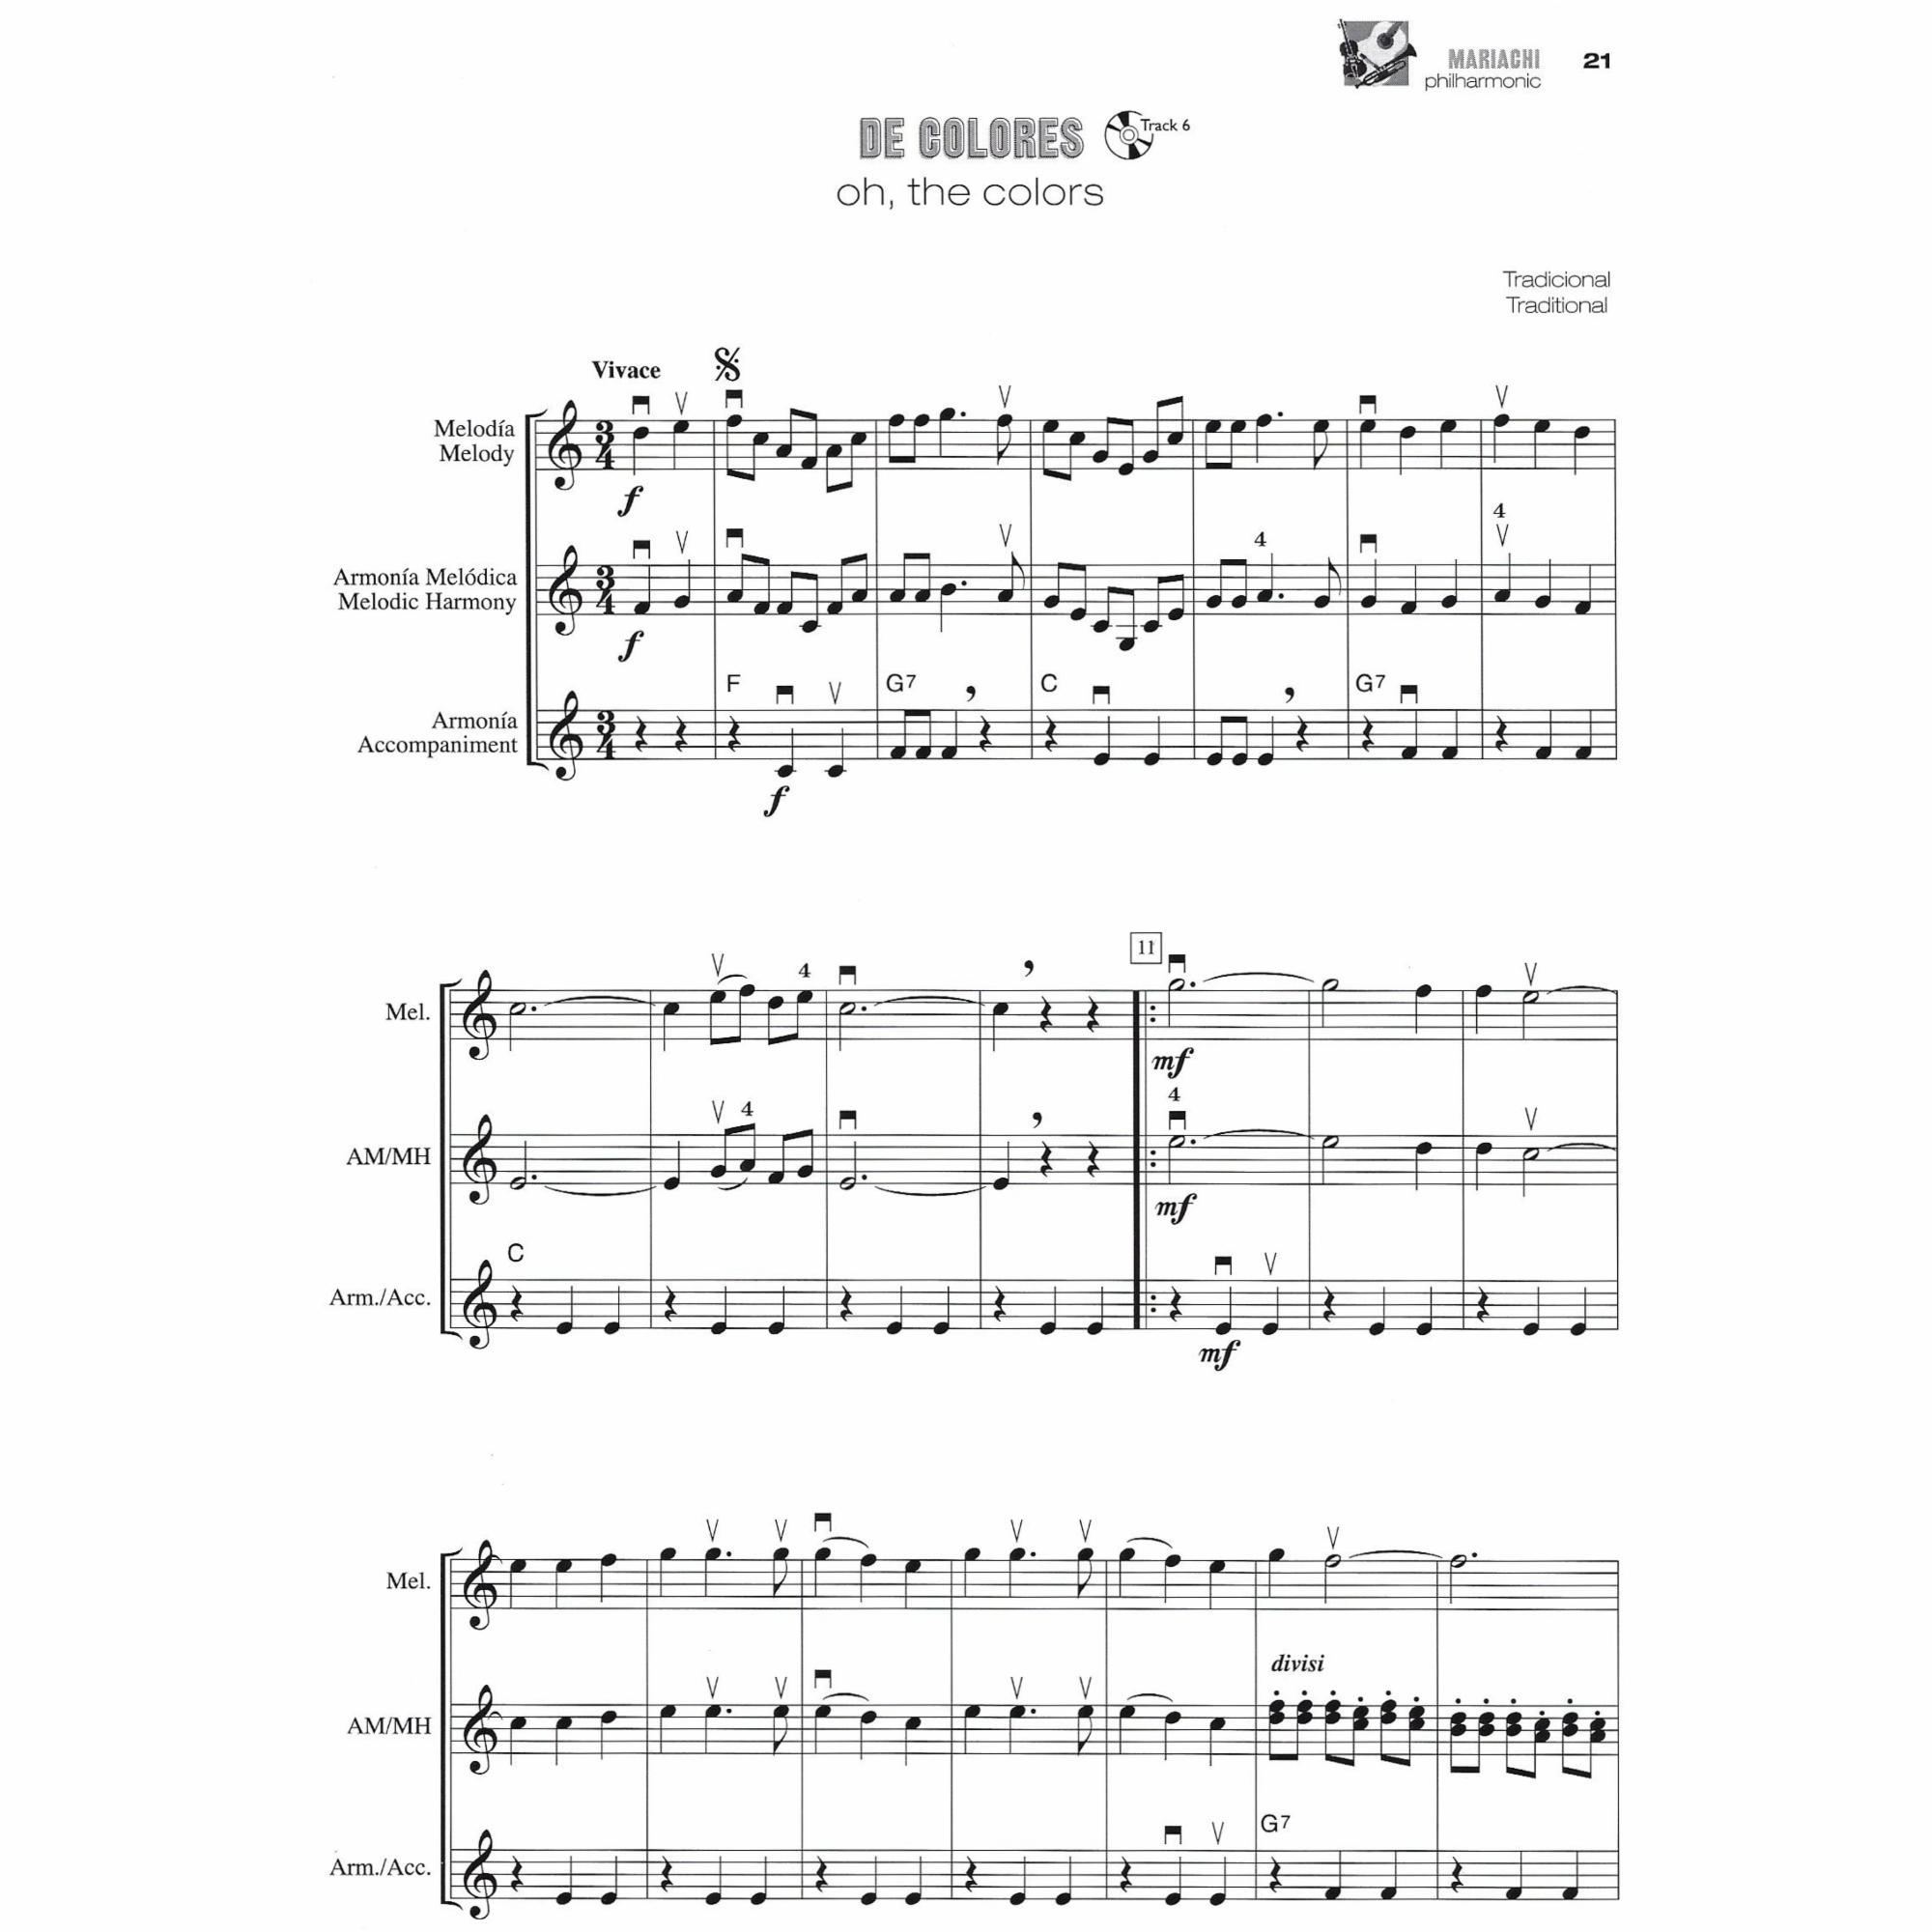 Sample: Violin (Pg. 21)